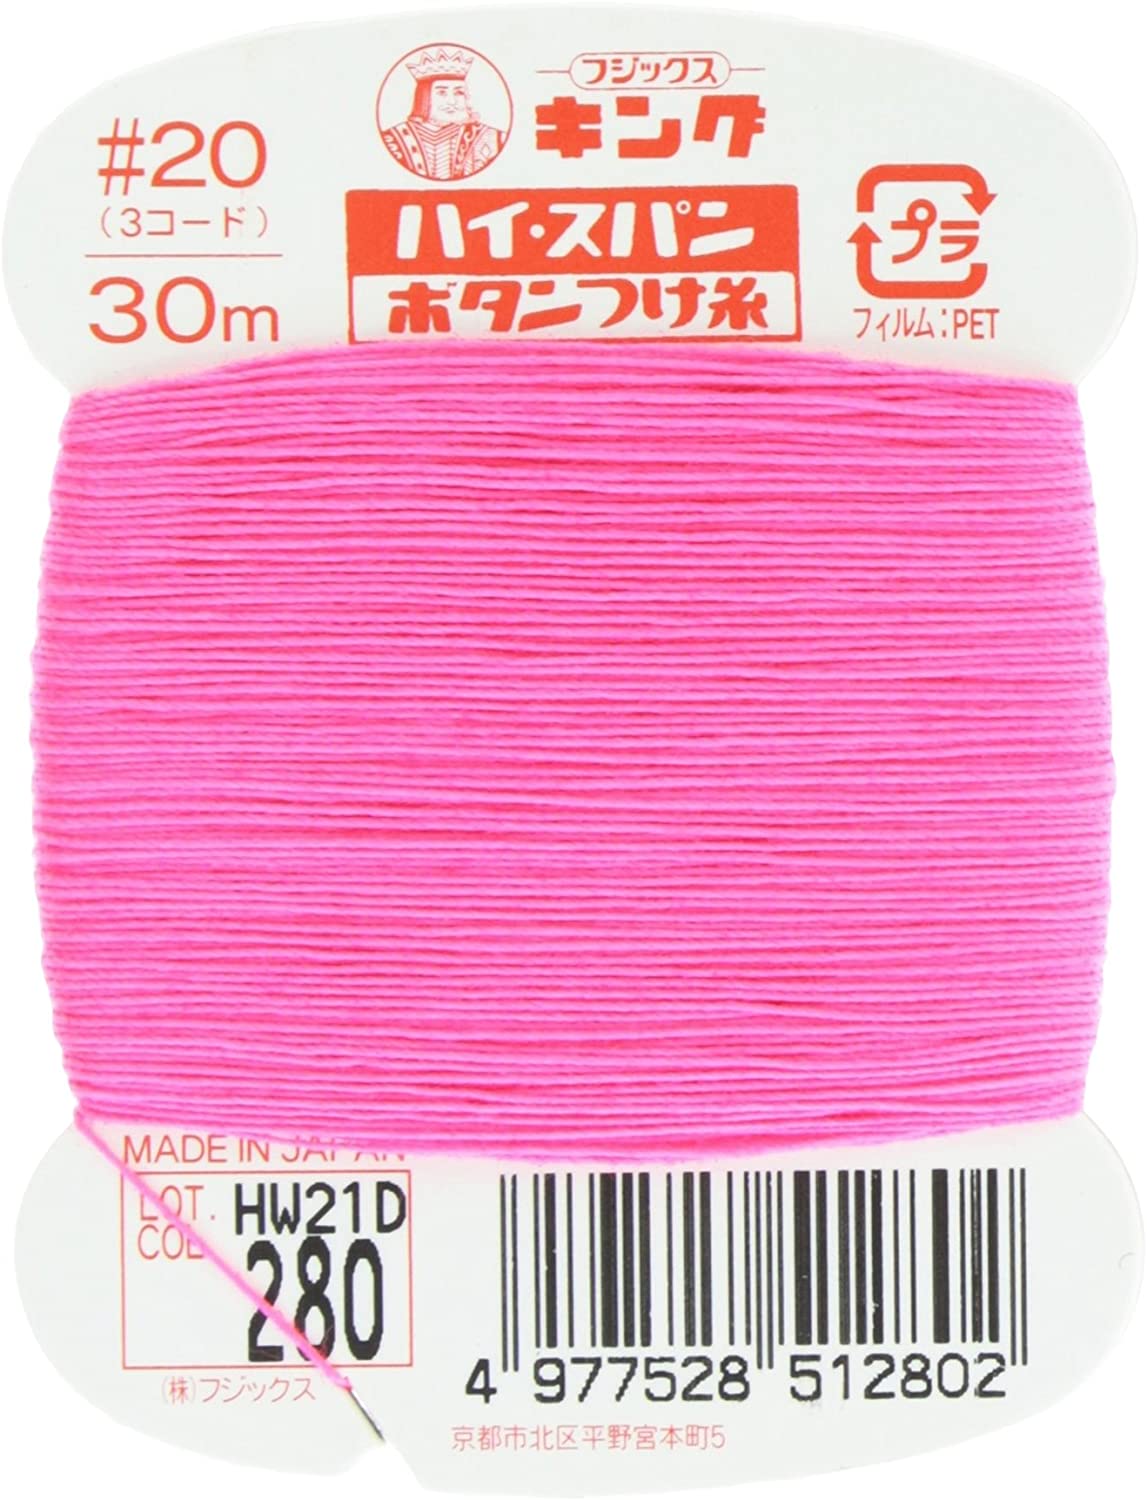 FK51-280 ハイスパンボタンつけ糸 #20 30m巻 (枚)